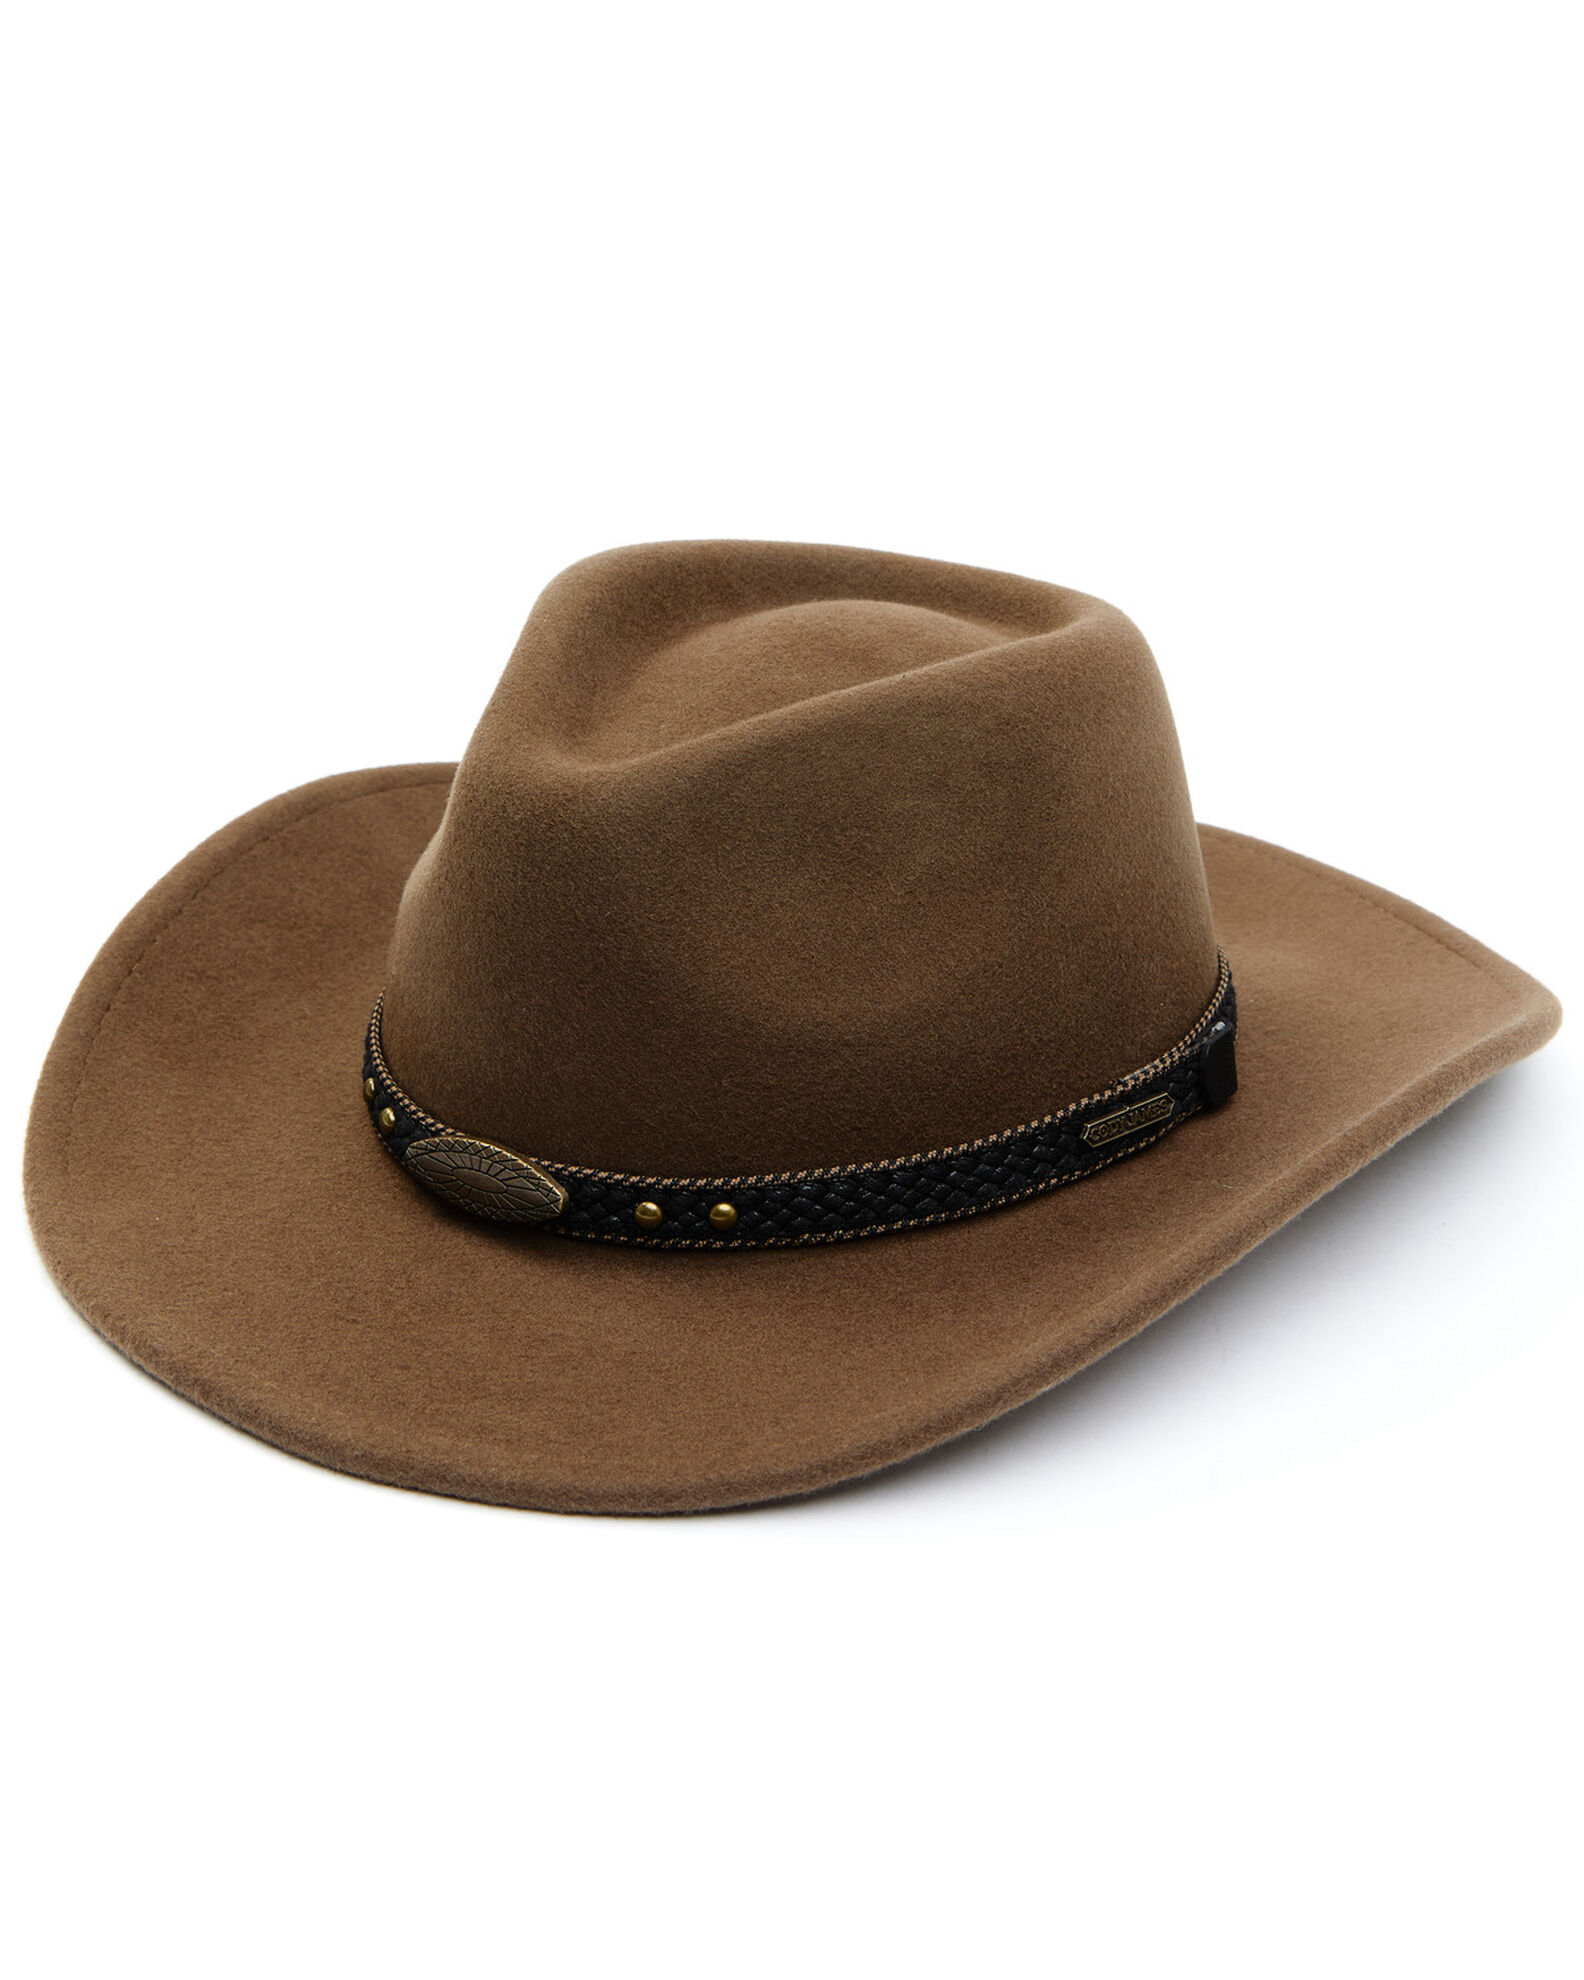 Cody James Men's Pecan Wool Felt Western Hat